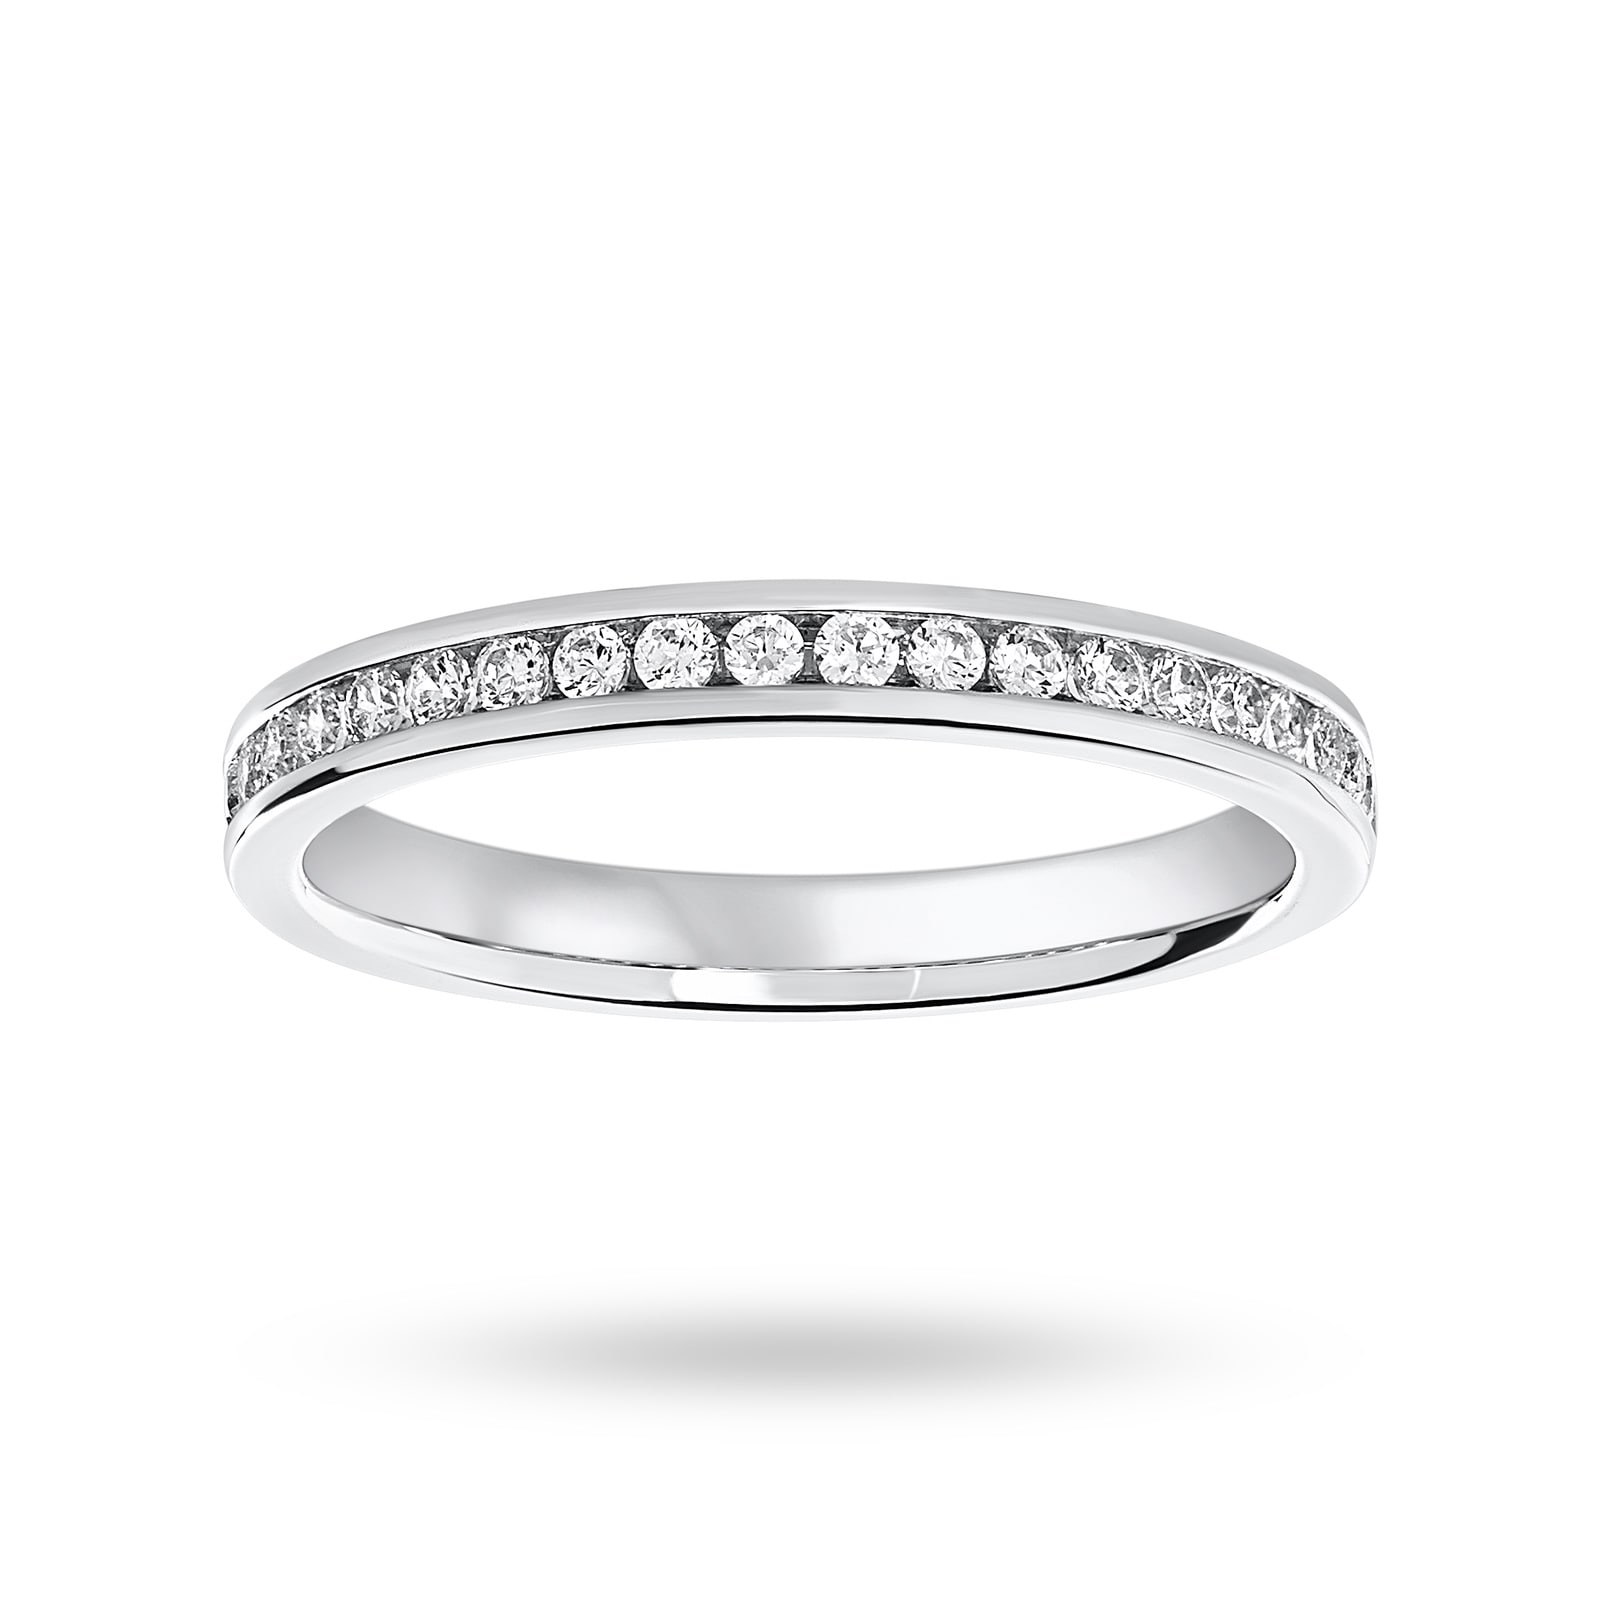 Platinum 0.25 Carat Brilliant Cut Half Eternity Ring - Ring Size M